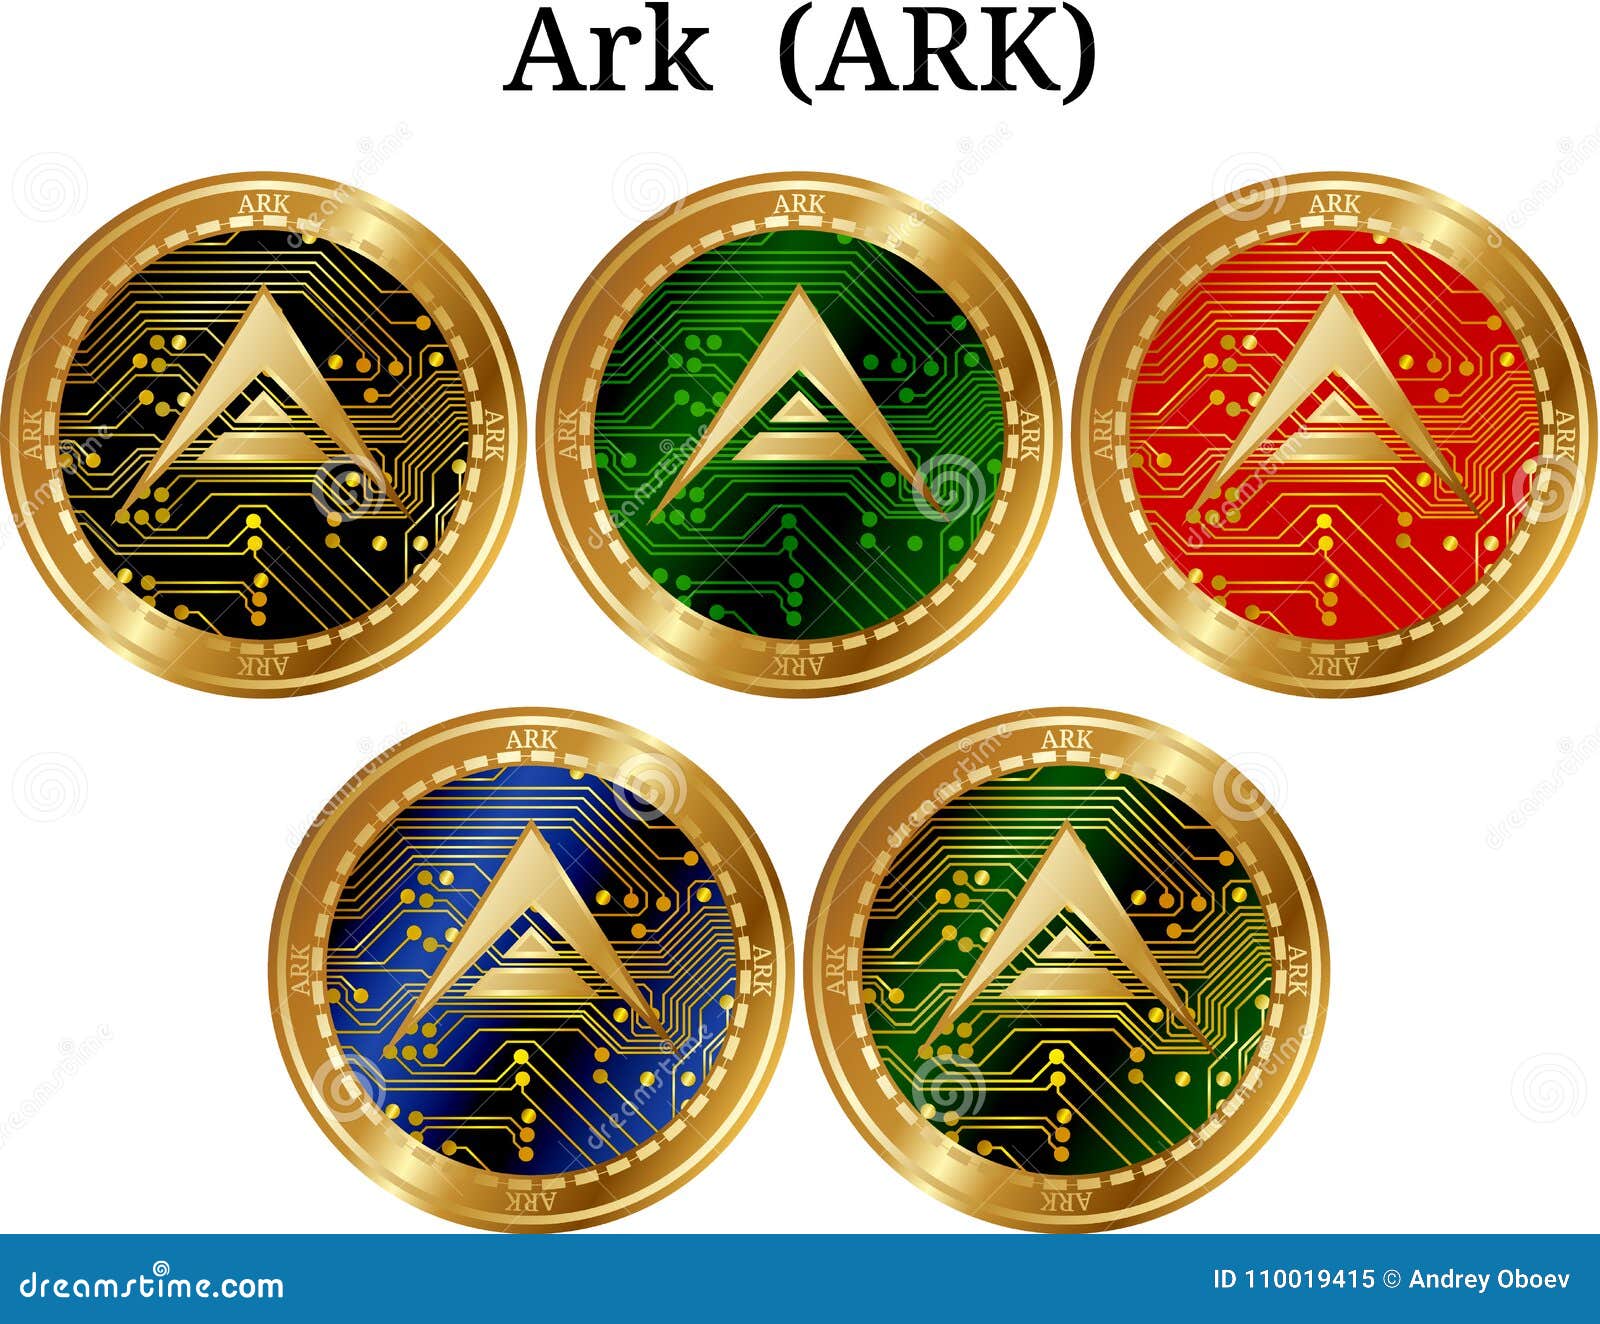 Set Of Physical Golden Coin Ark ARK, Digital ...